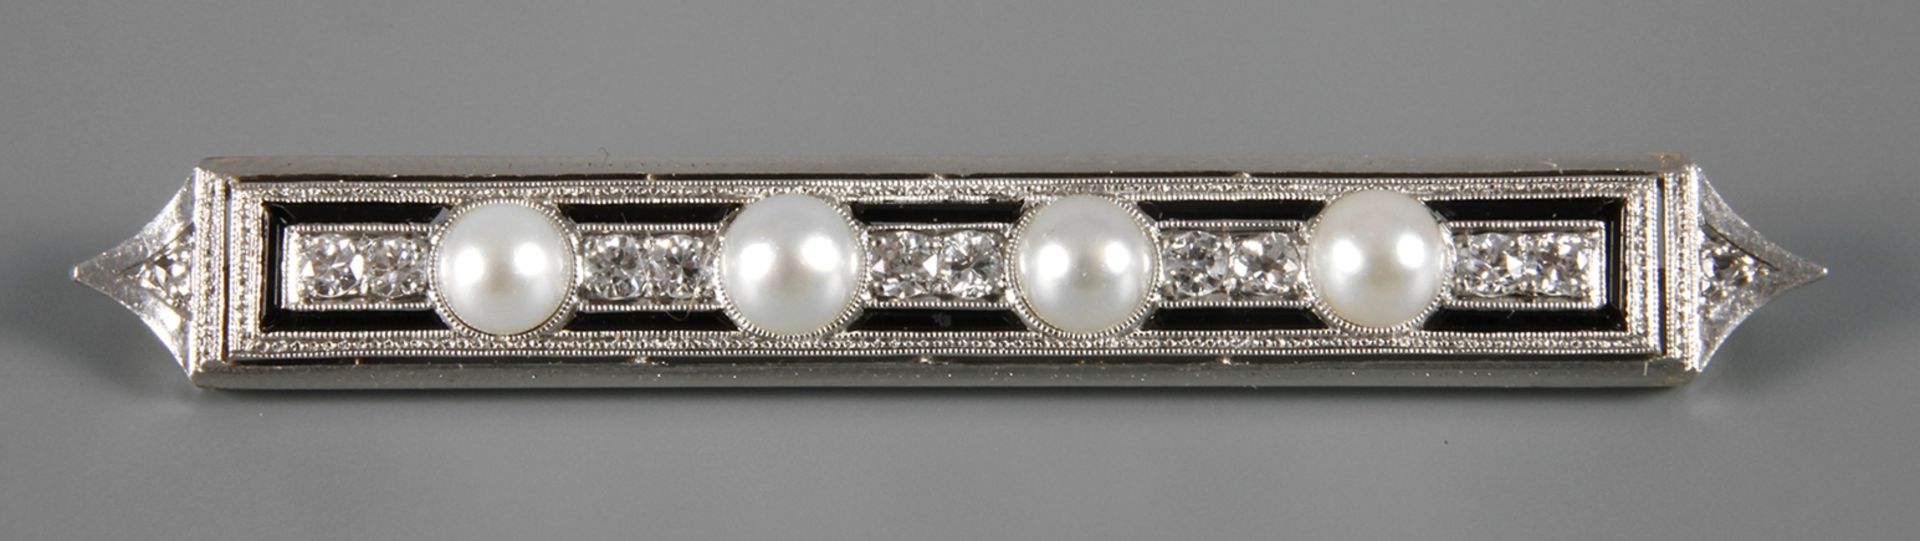 Brosche mit Perlen und Brillanten um 1920, Weißgold geprüft 585/1000, längliche Form, besetzt mit